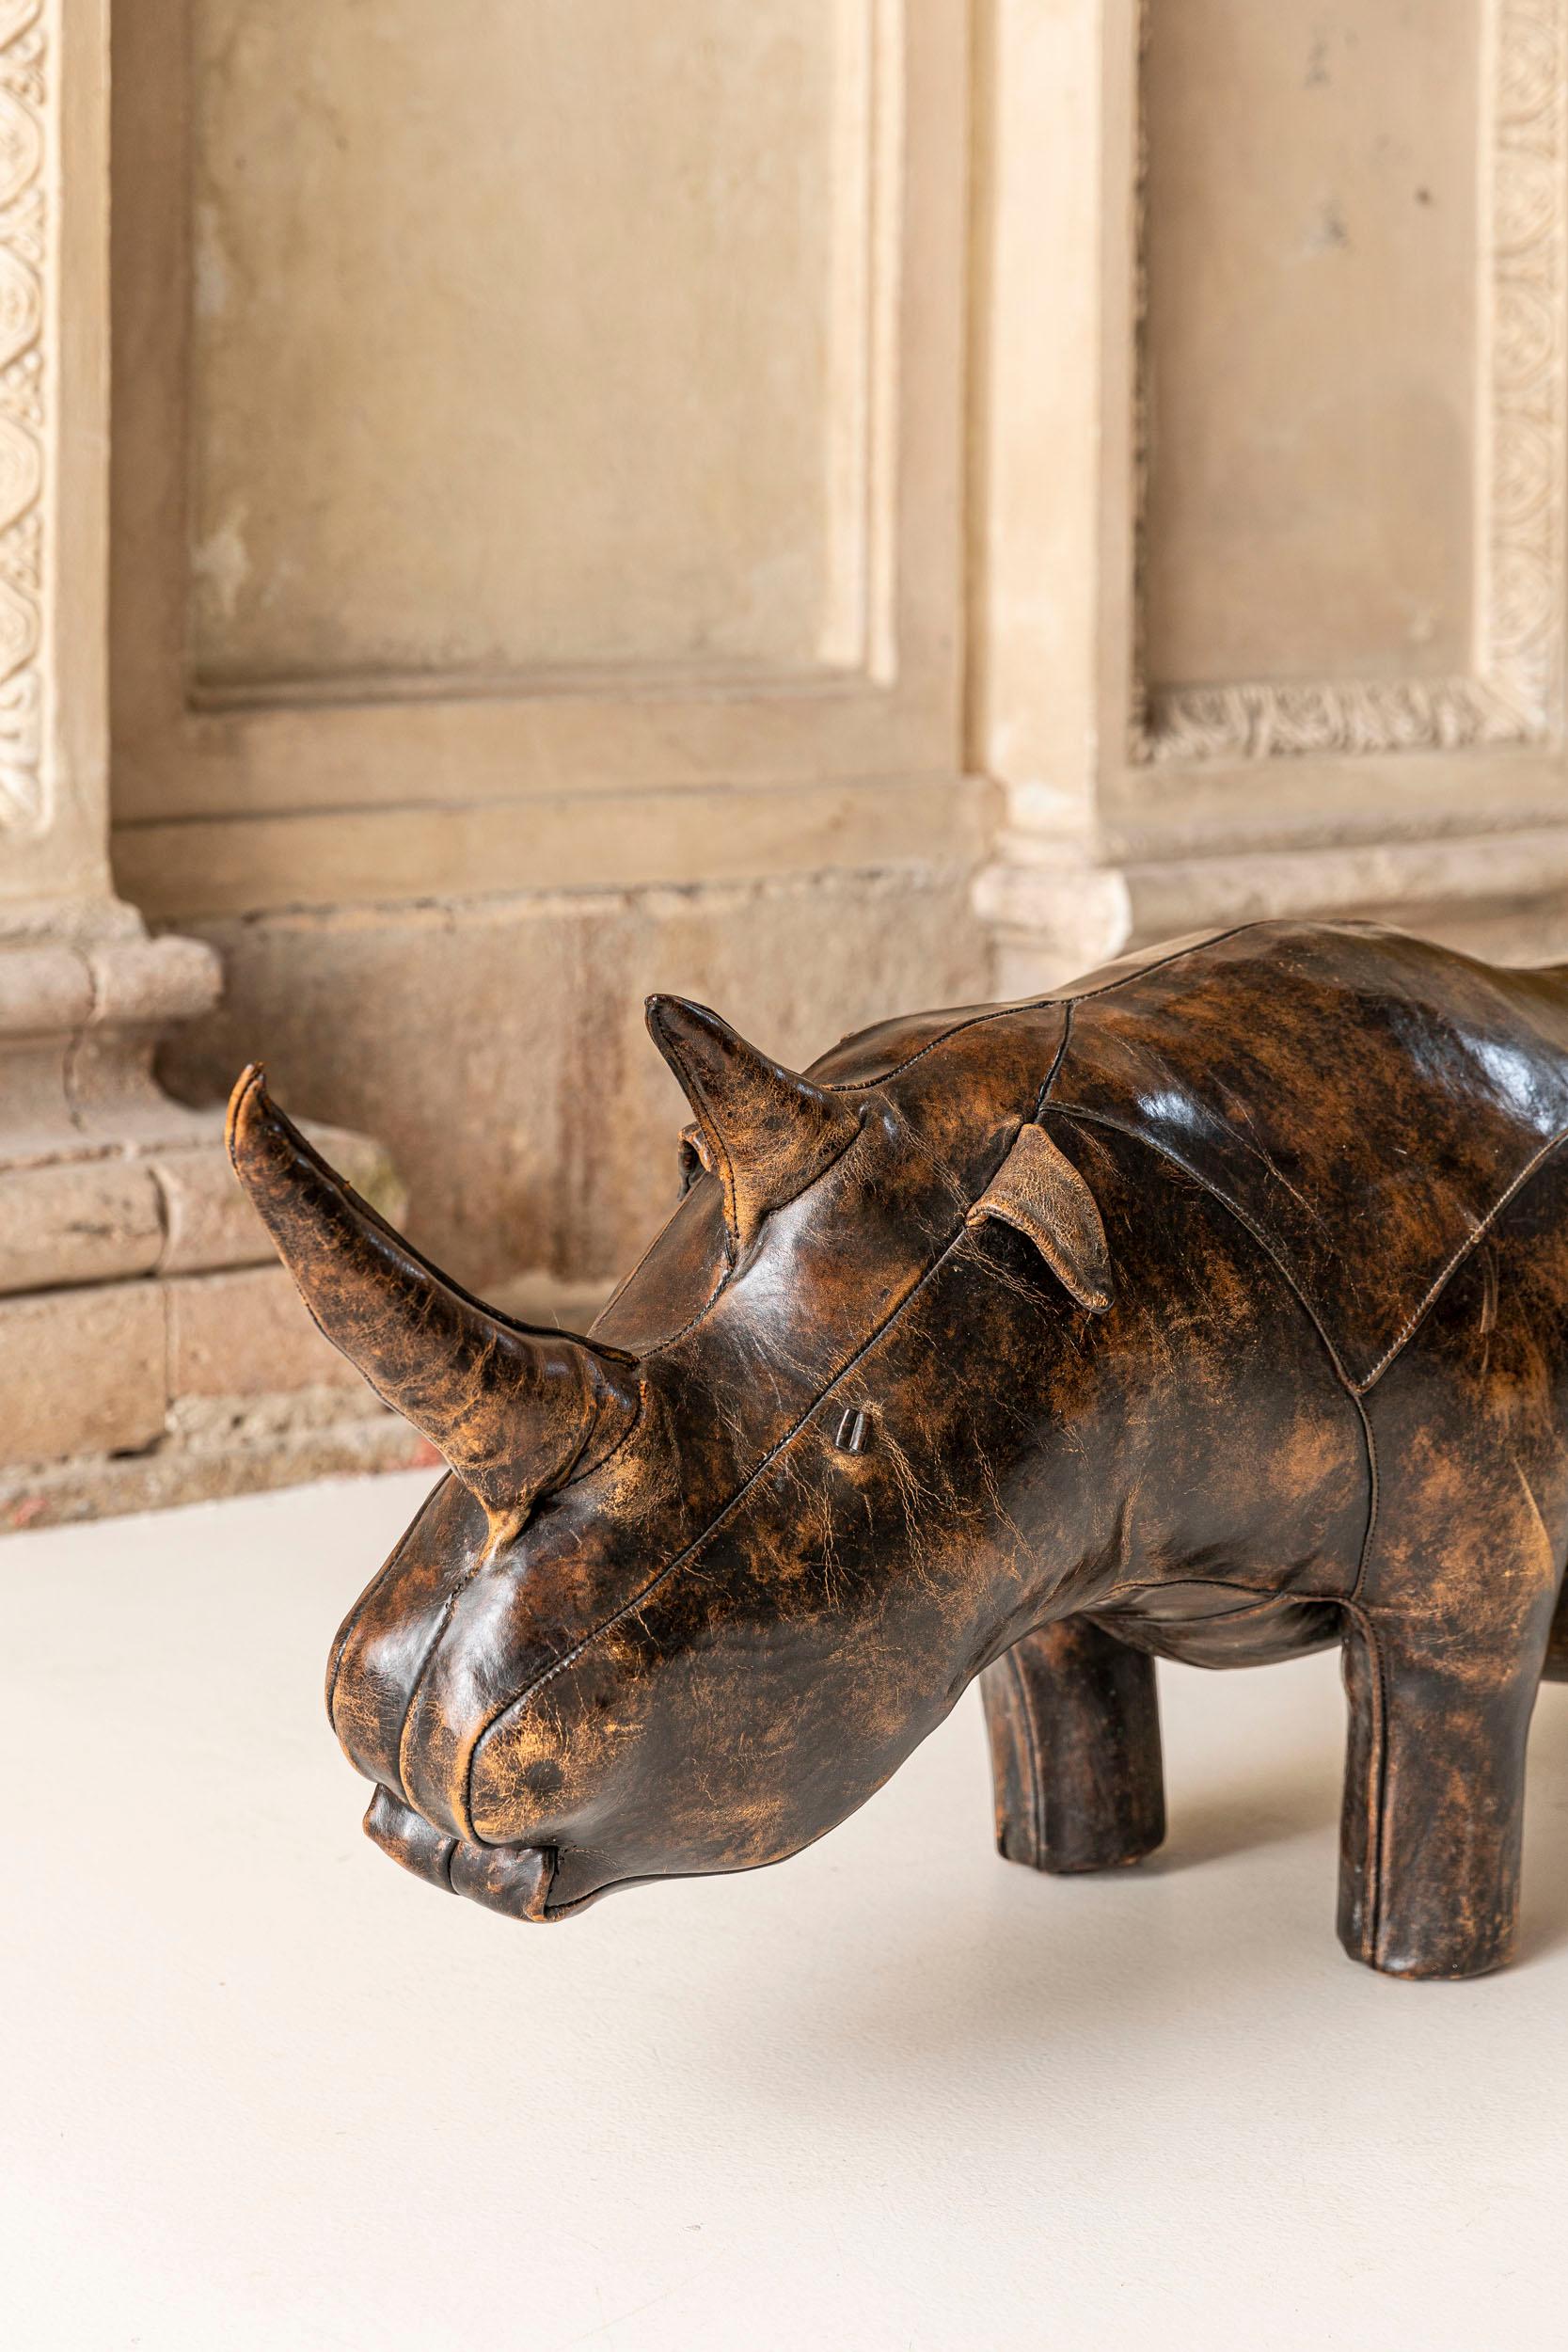 Leather Rhino by Dimitri Omersa 3